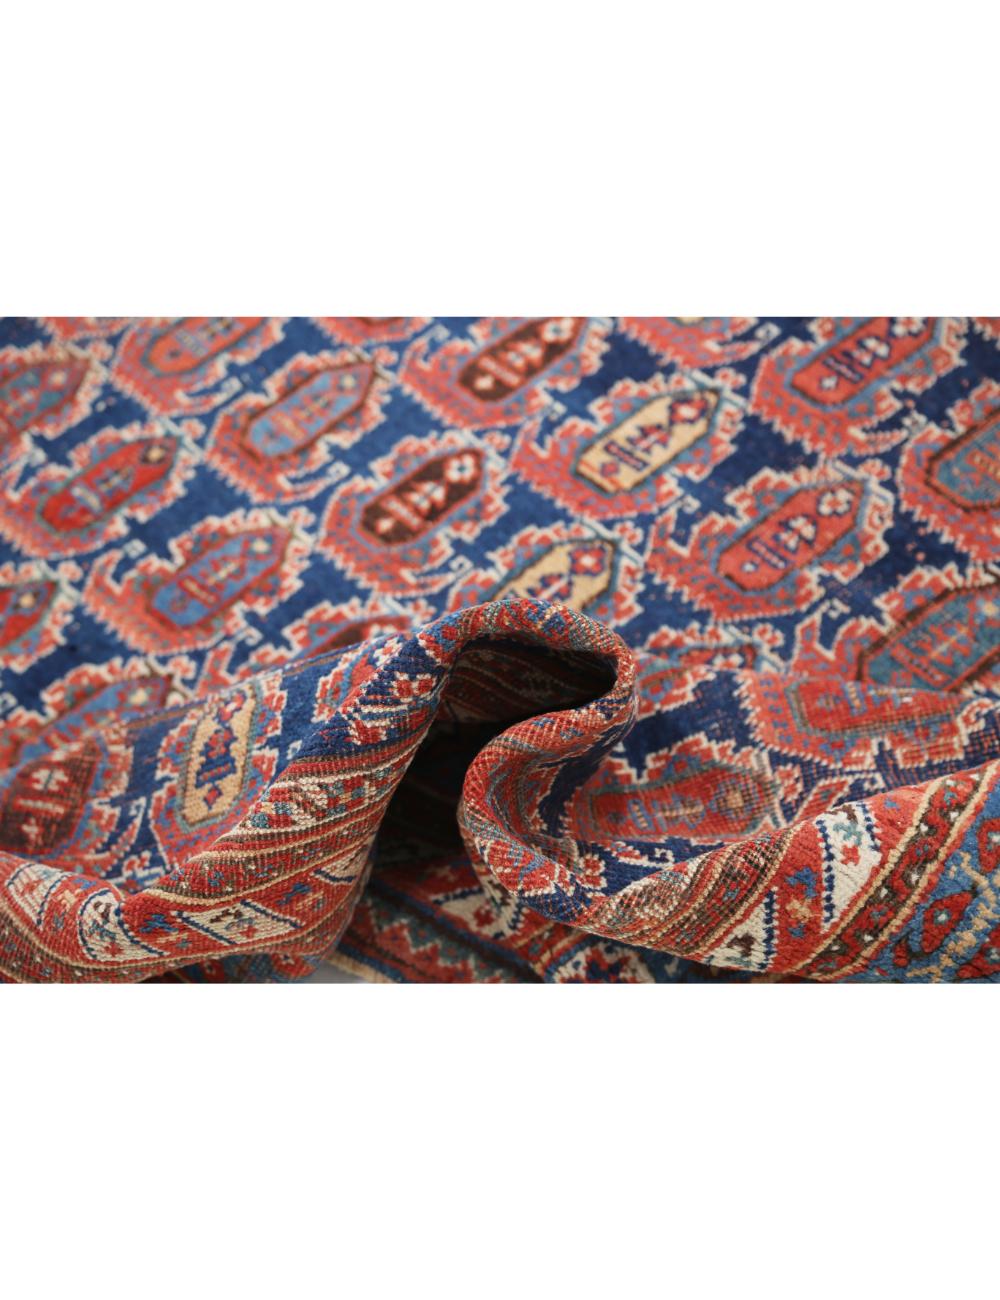 Hand Knotted Antique Persian Afshar Wool Rug - 6'3'' x 15'1'' Arteverk Arteverk Rugs